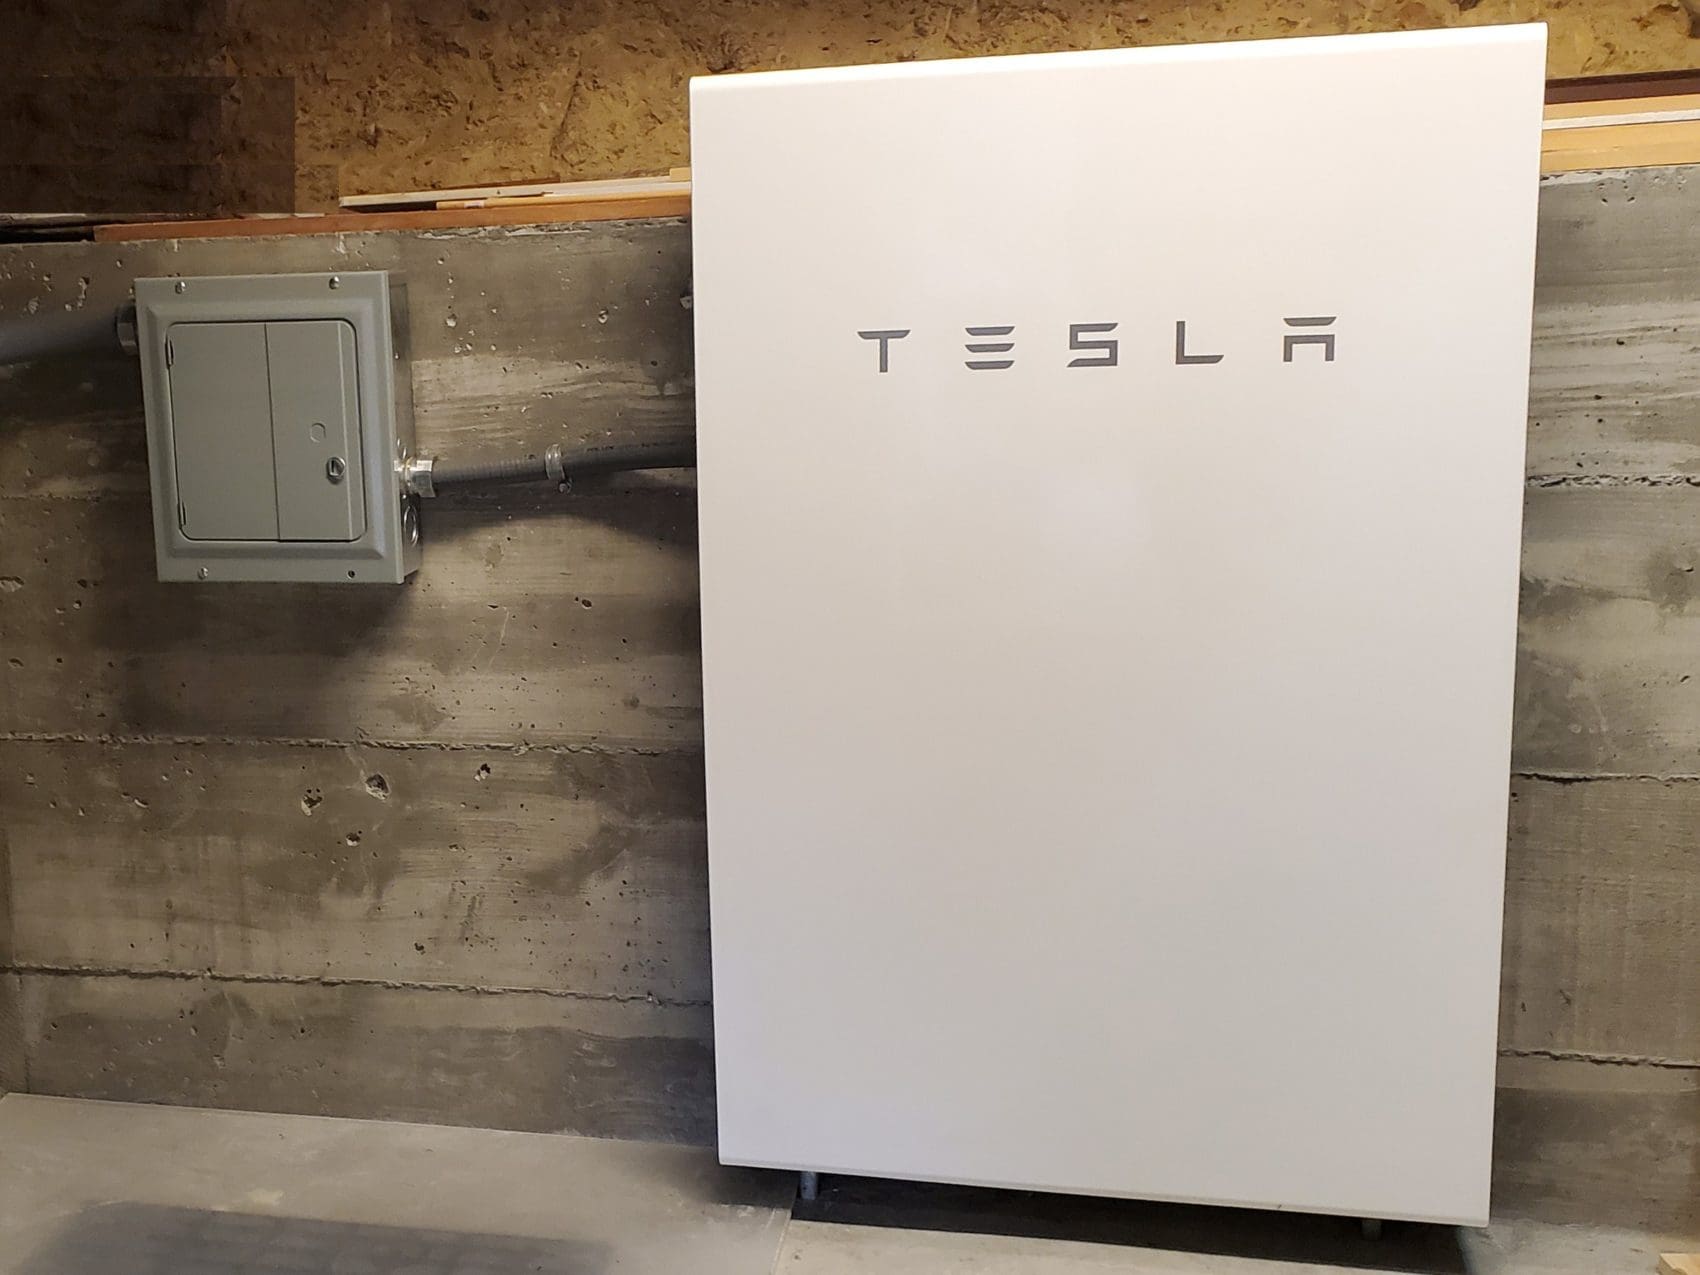 SolarCraft Tesla Powerwall solar battery